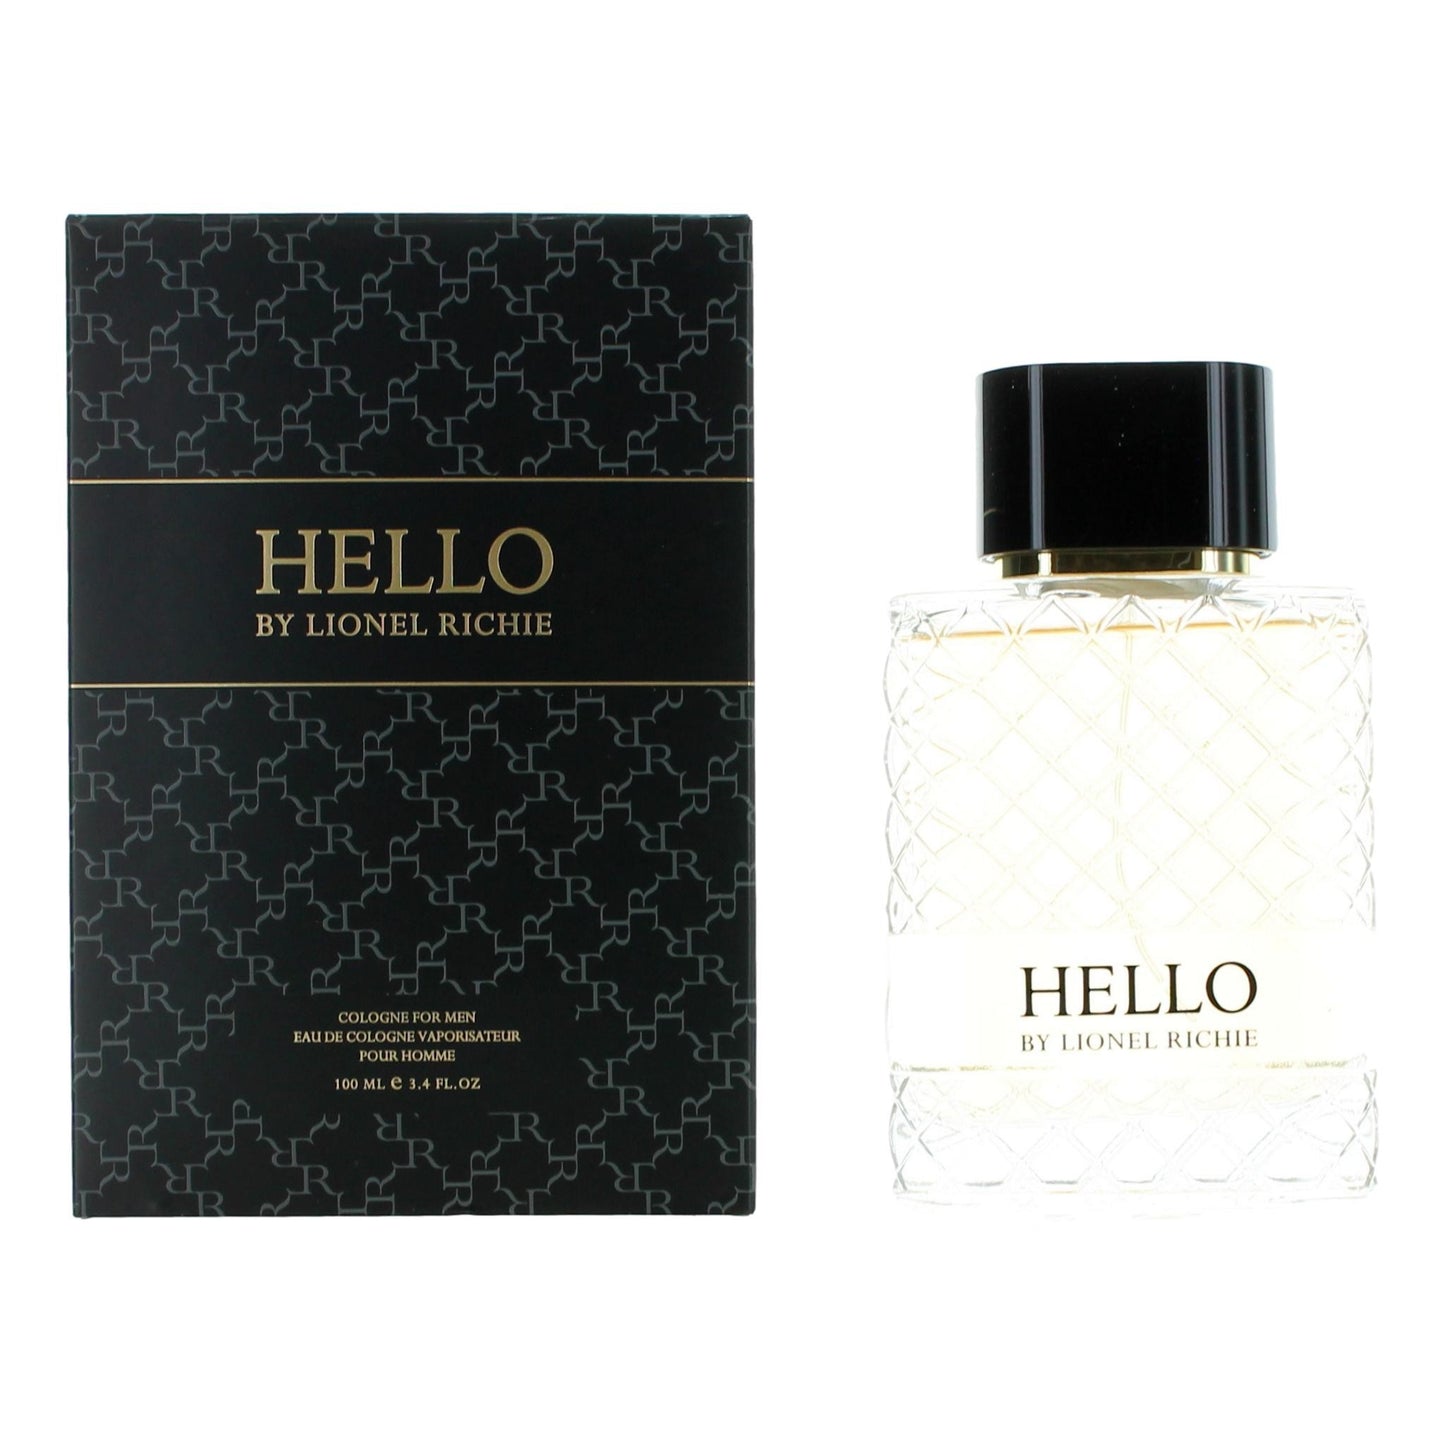 Bottle of Hello by Lionel Richie, 3.4 oz Eau de Cologne Spray for Men